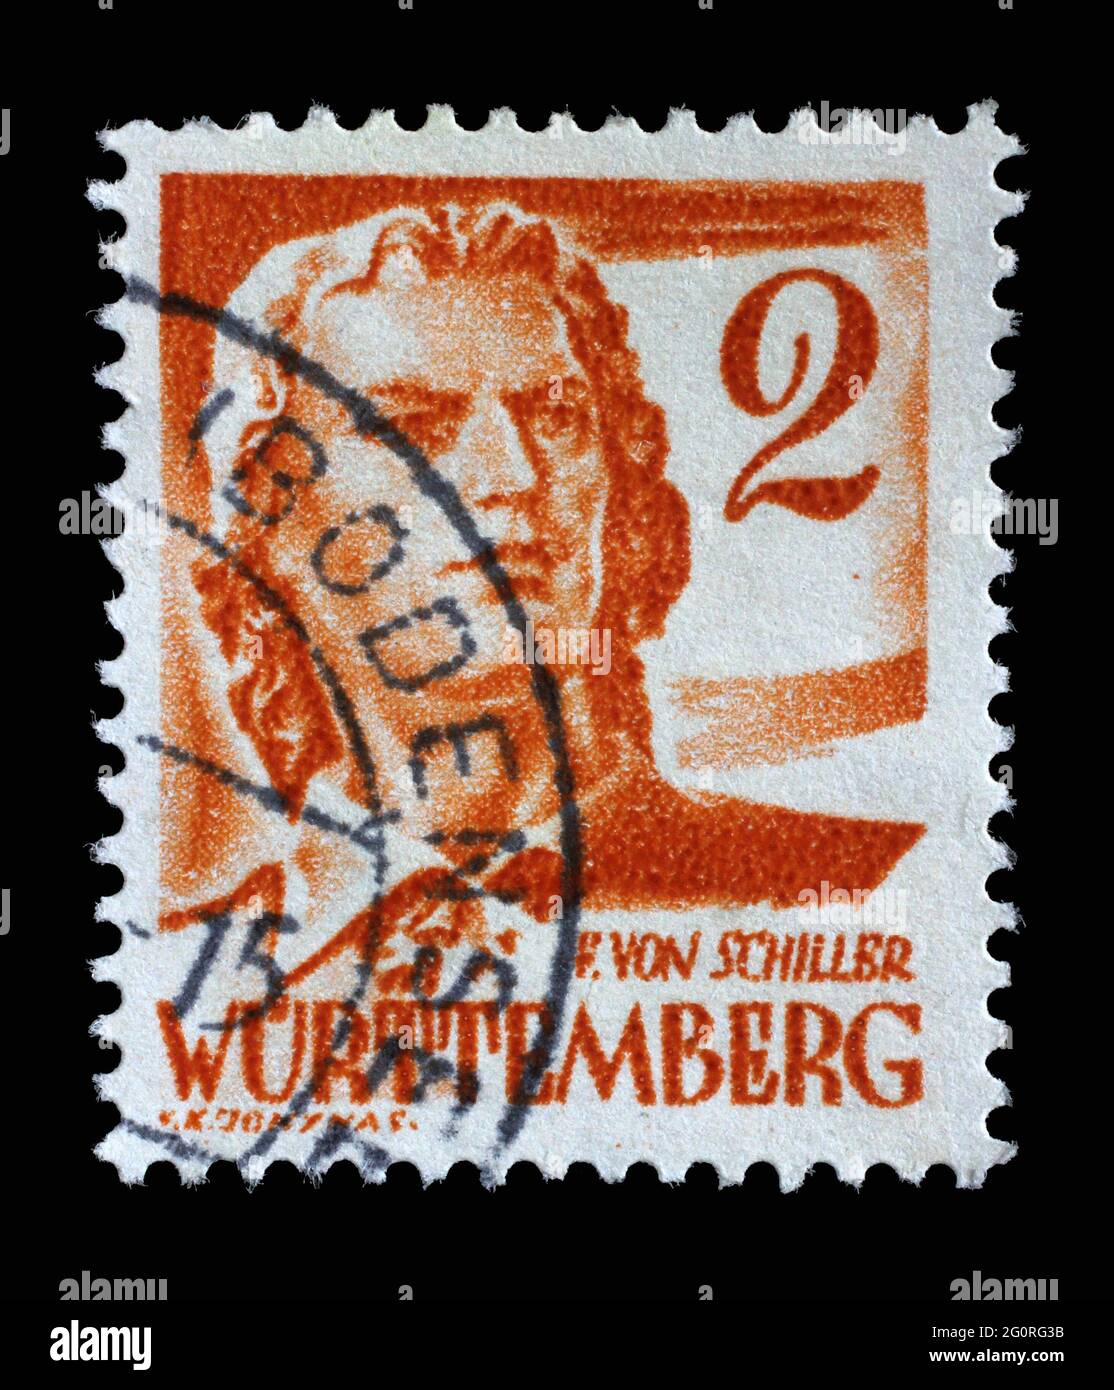 Die in Deutschland gedruckte, französische Besetzung von Württemberg zeigt Friedrich von Schiller, Dichter und Schriftsteller, um 1948 Stockfoto